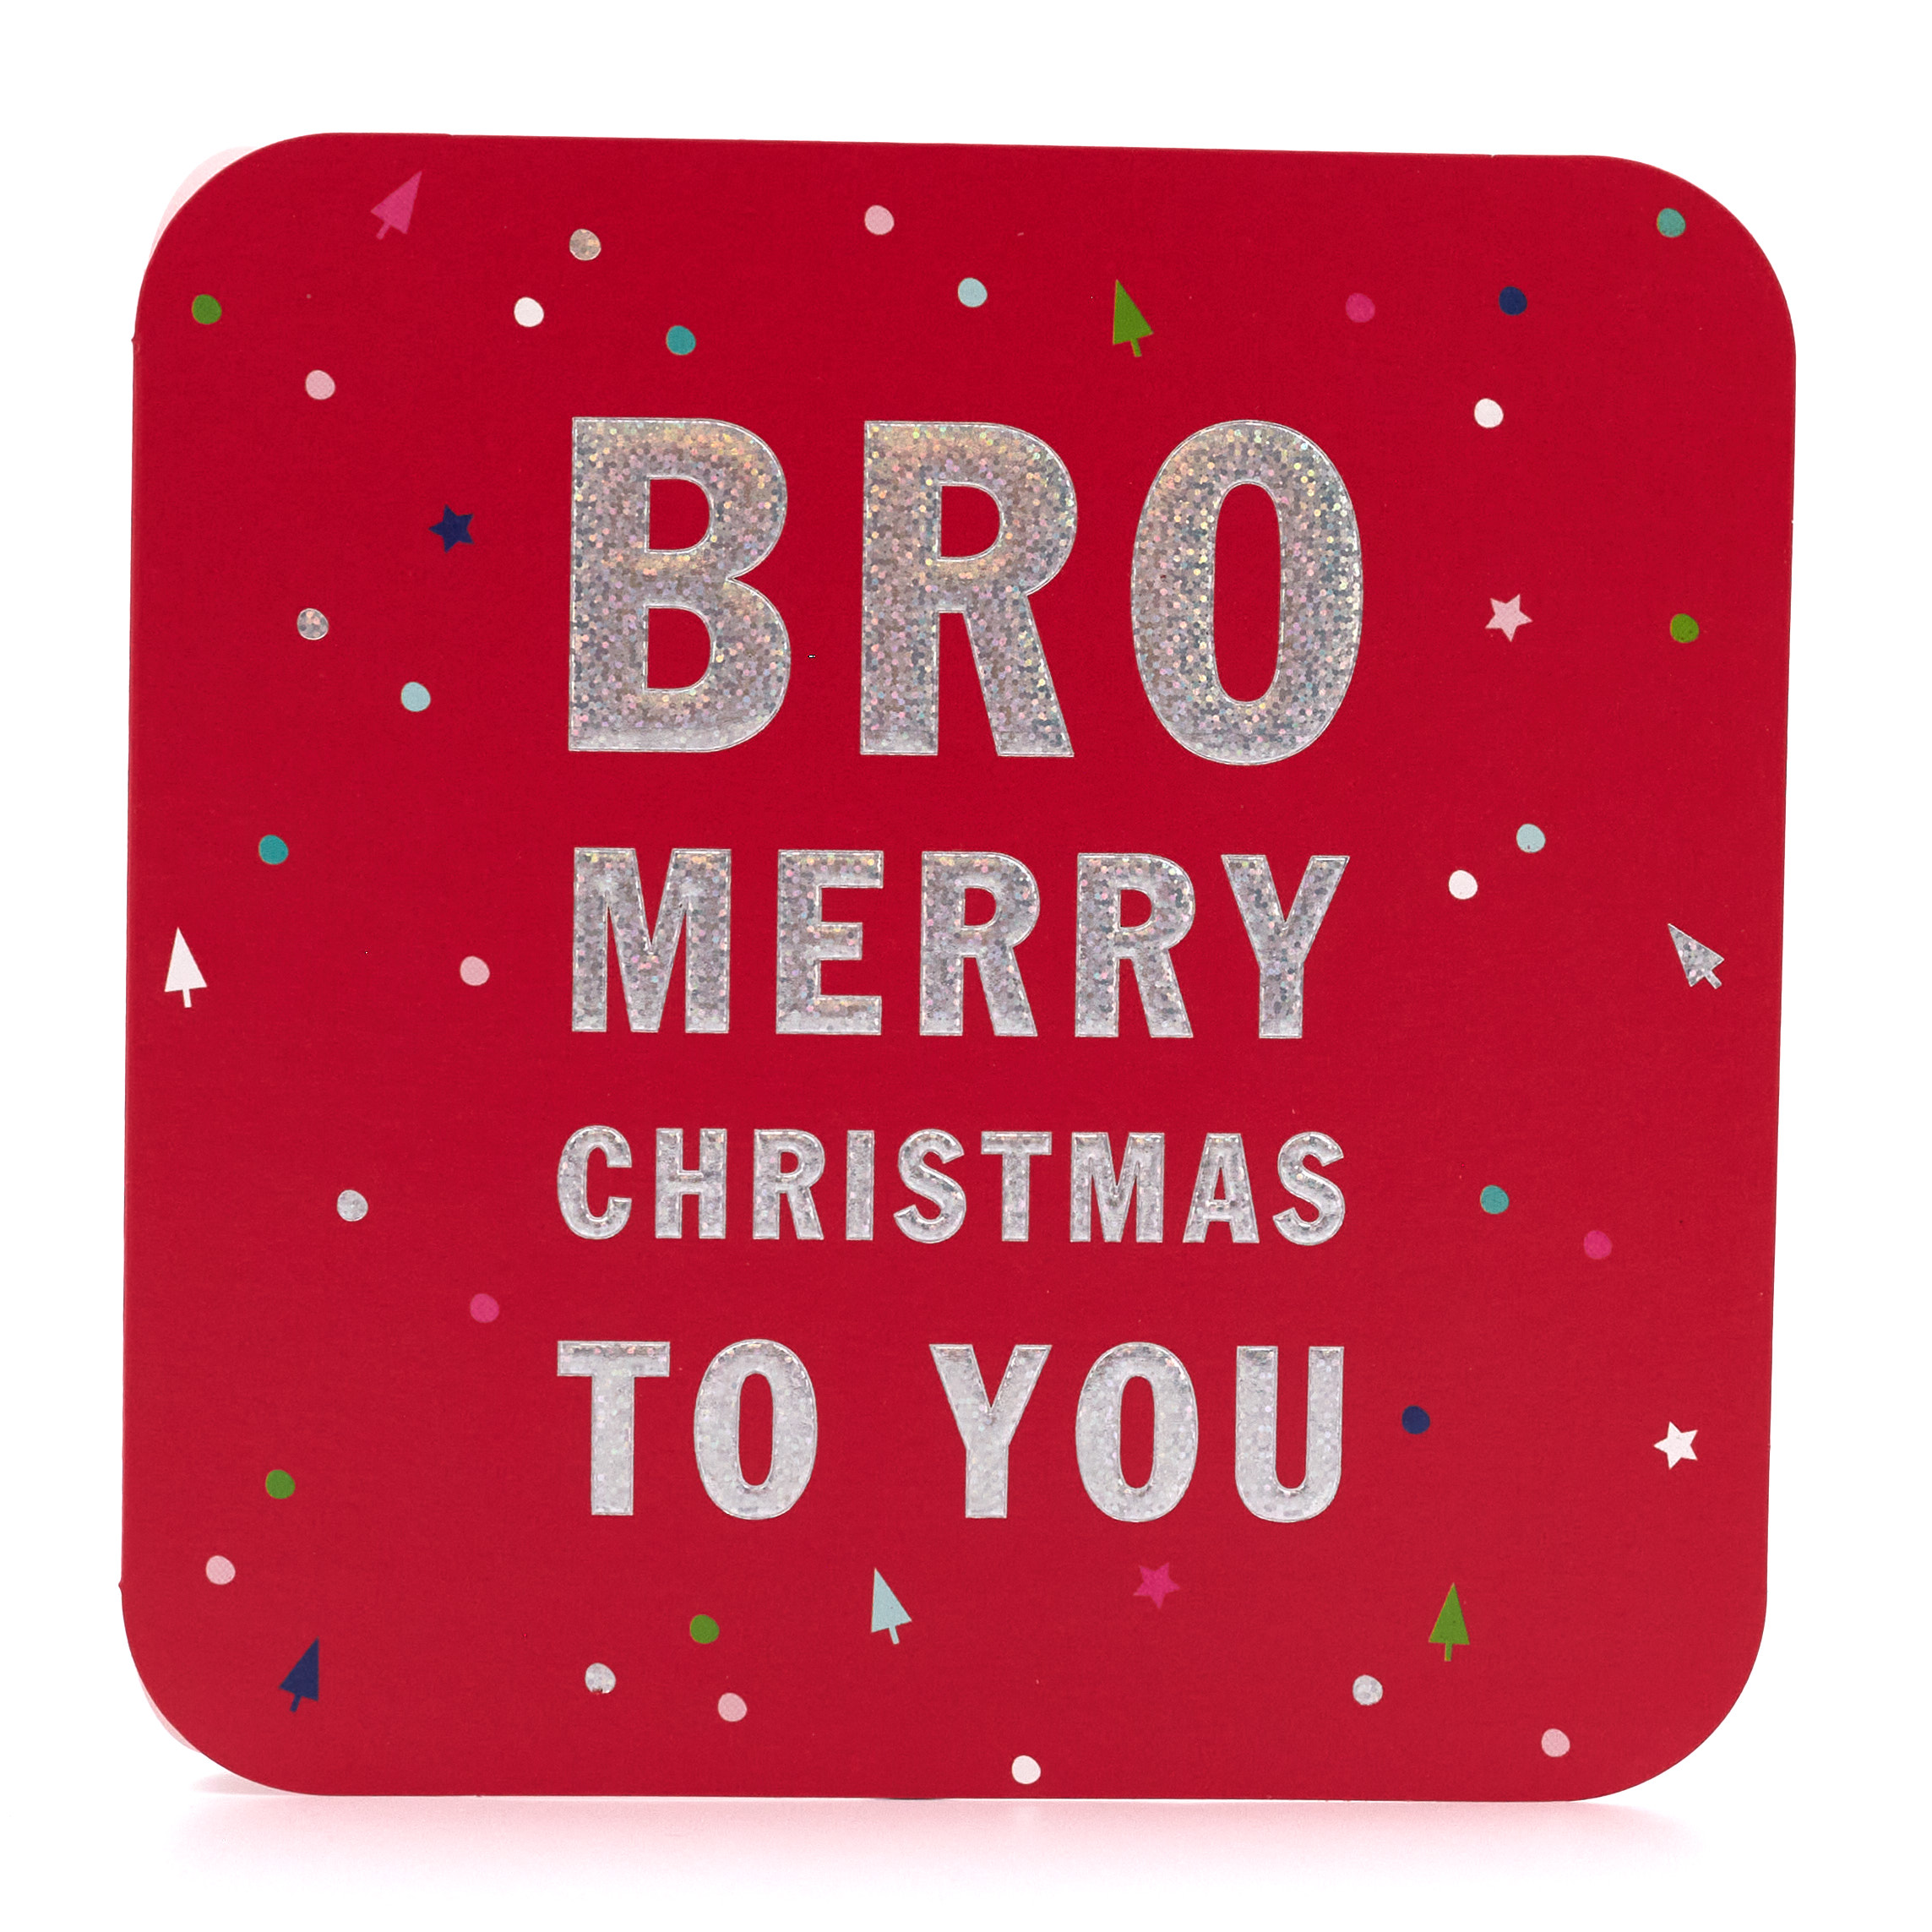 Christmas Card - Merry Christmas Bro